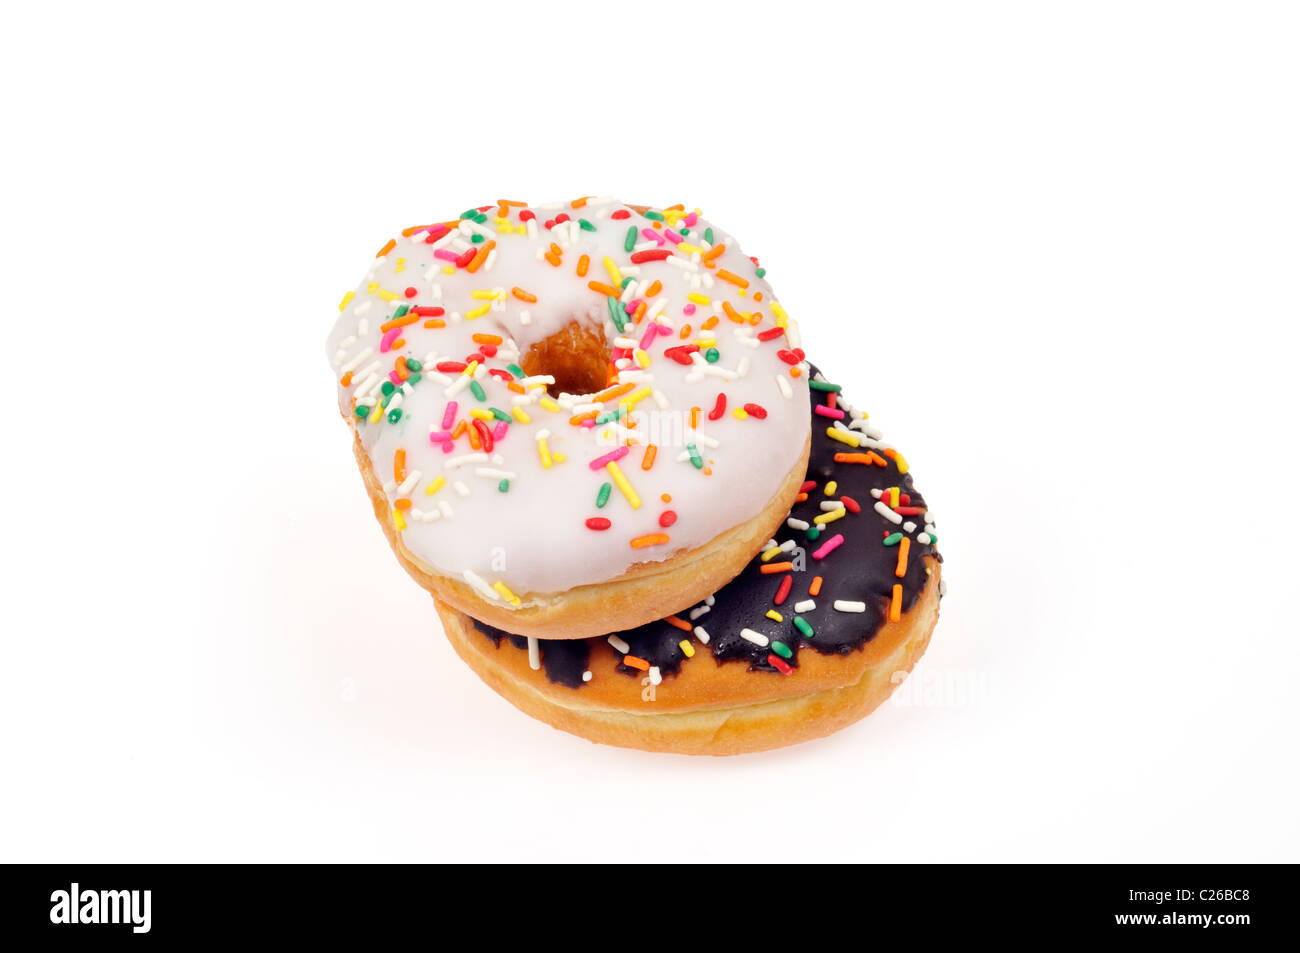 Vanille Matt Donut und Schokolade mattierte Donut mit bunten Streuseln auf weißem Hintergrund, ausgeschnitten. Stockfoto